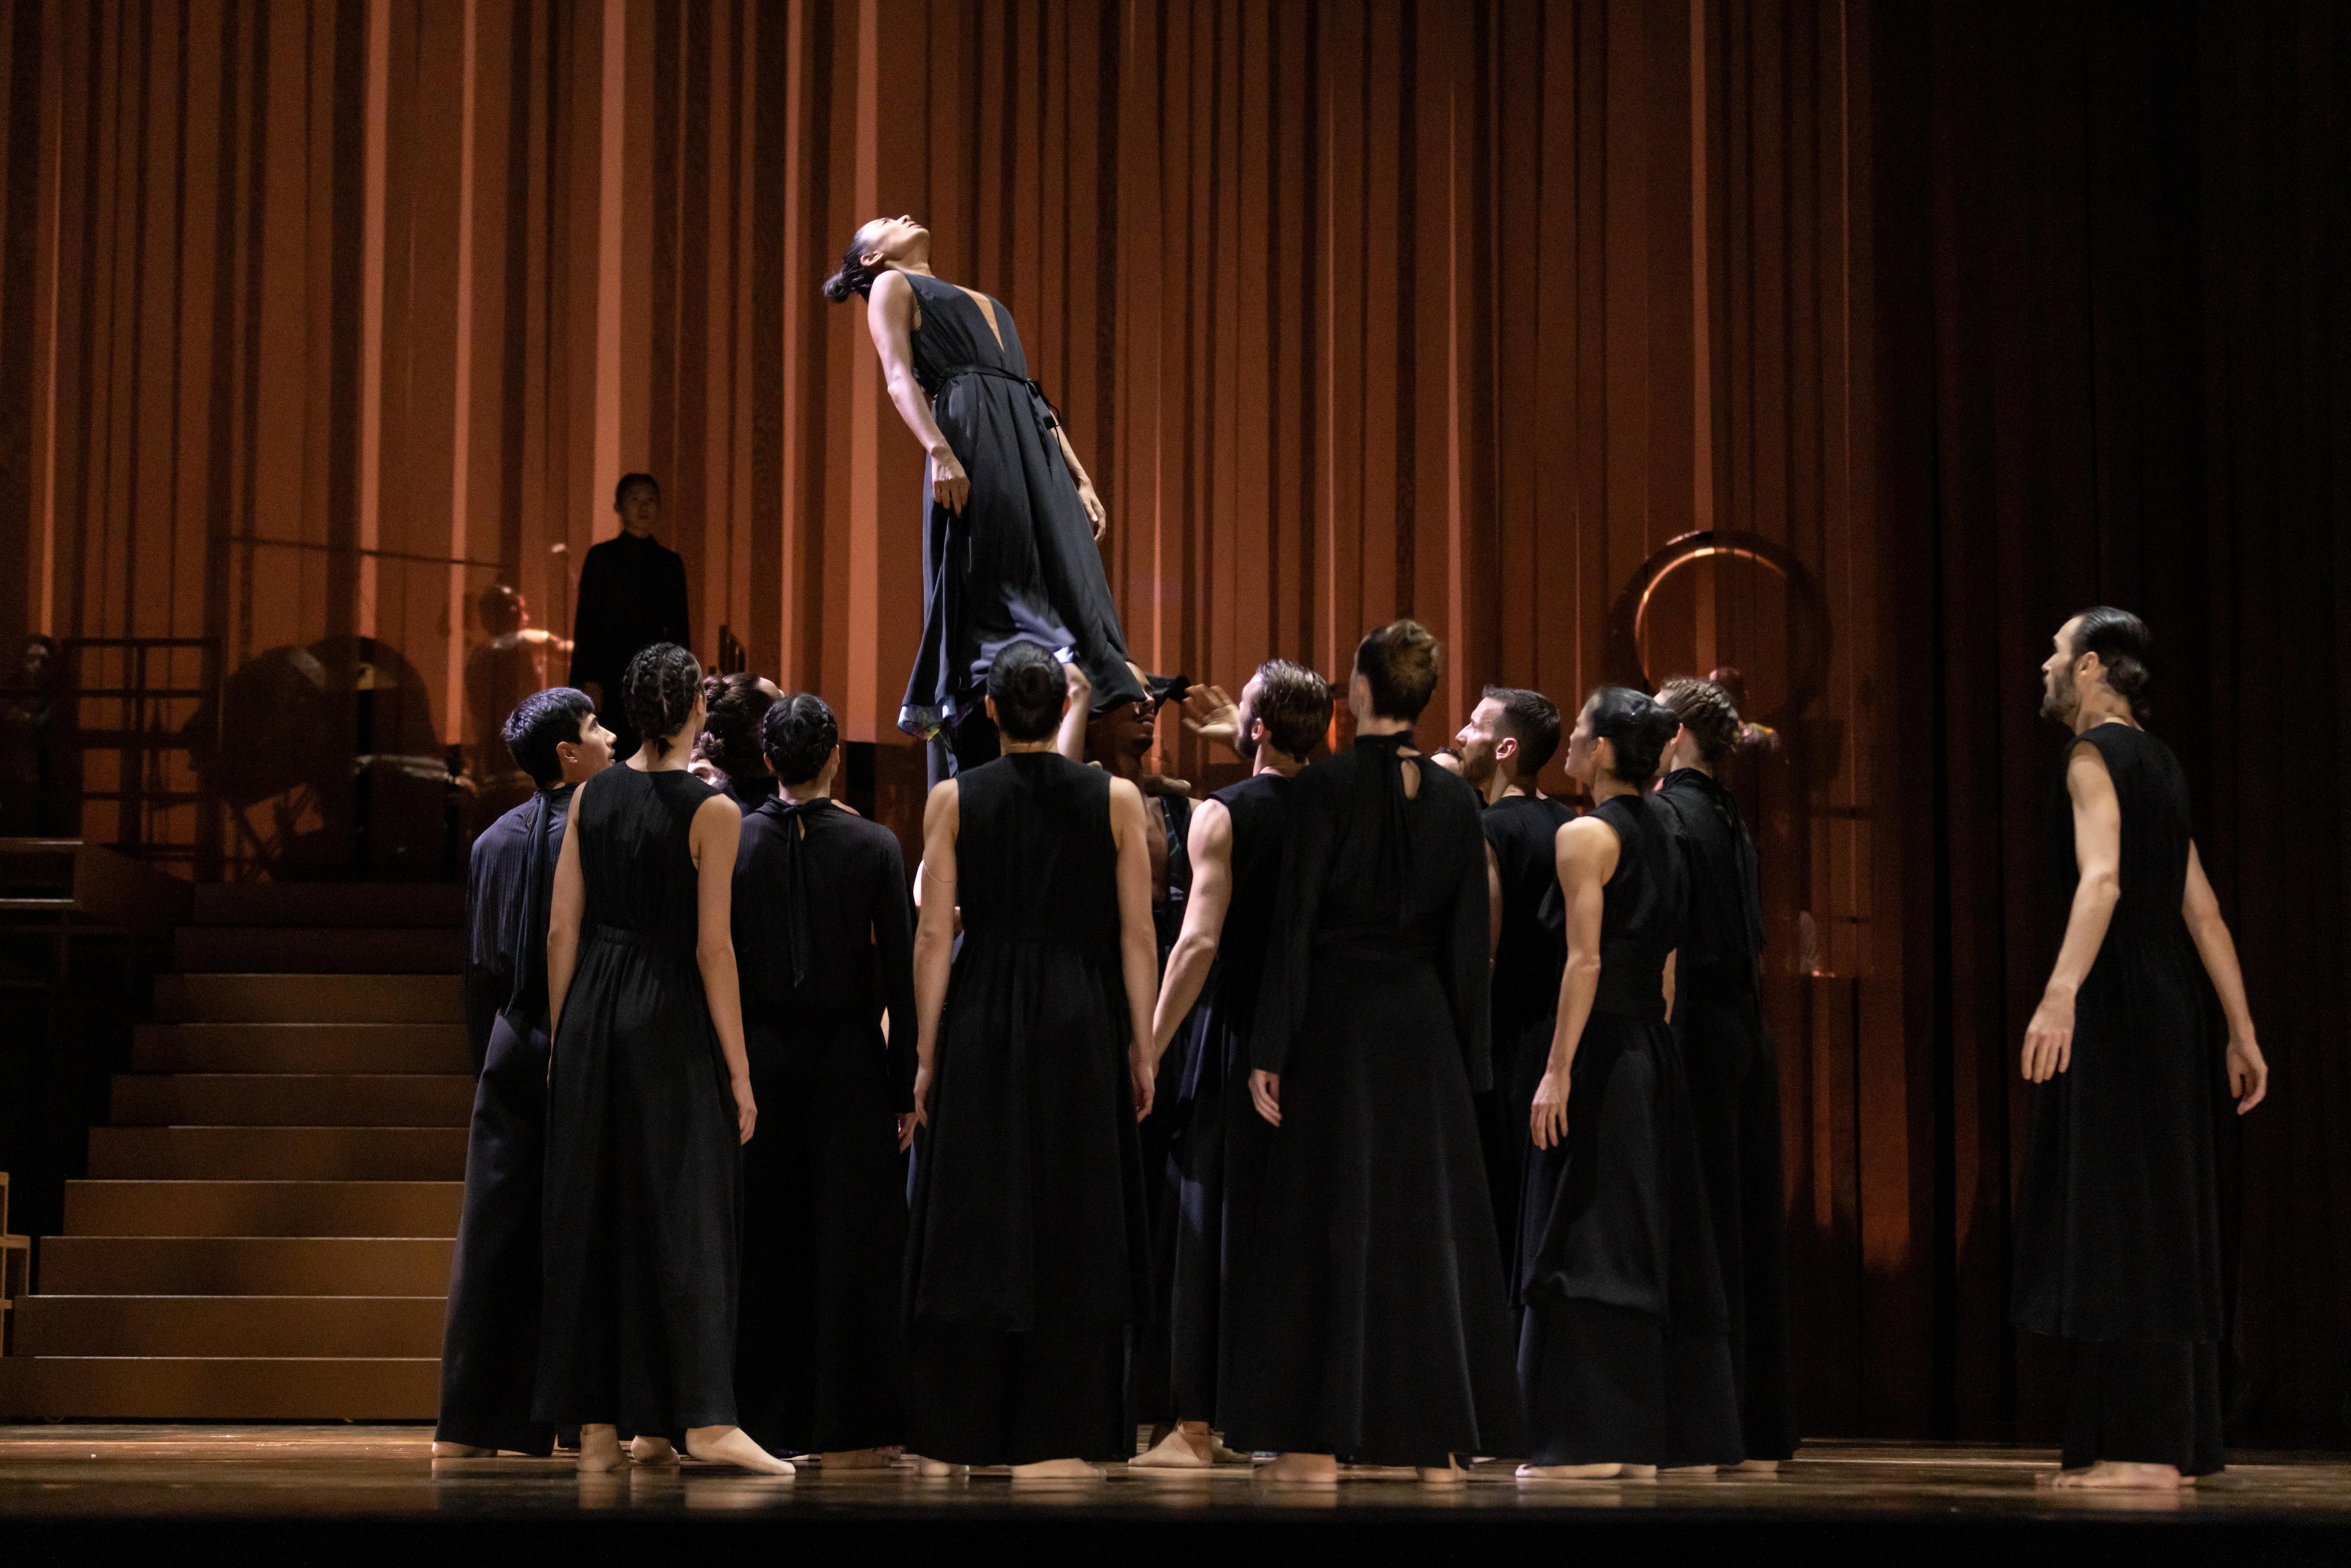 Danseurs de Ukiyo-e par Sidi Larbi Cherkaoui en costume noir. Ils font cercle autour d’un danseur porté vers le haut.